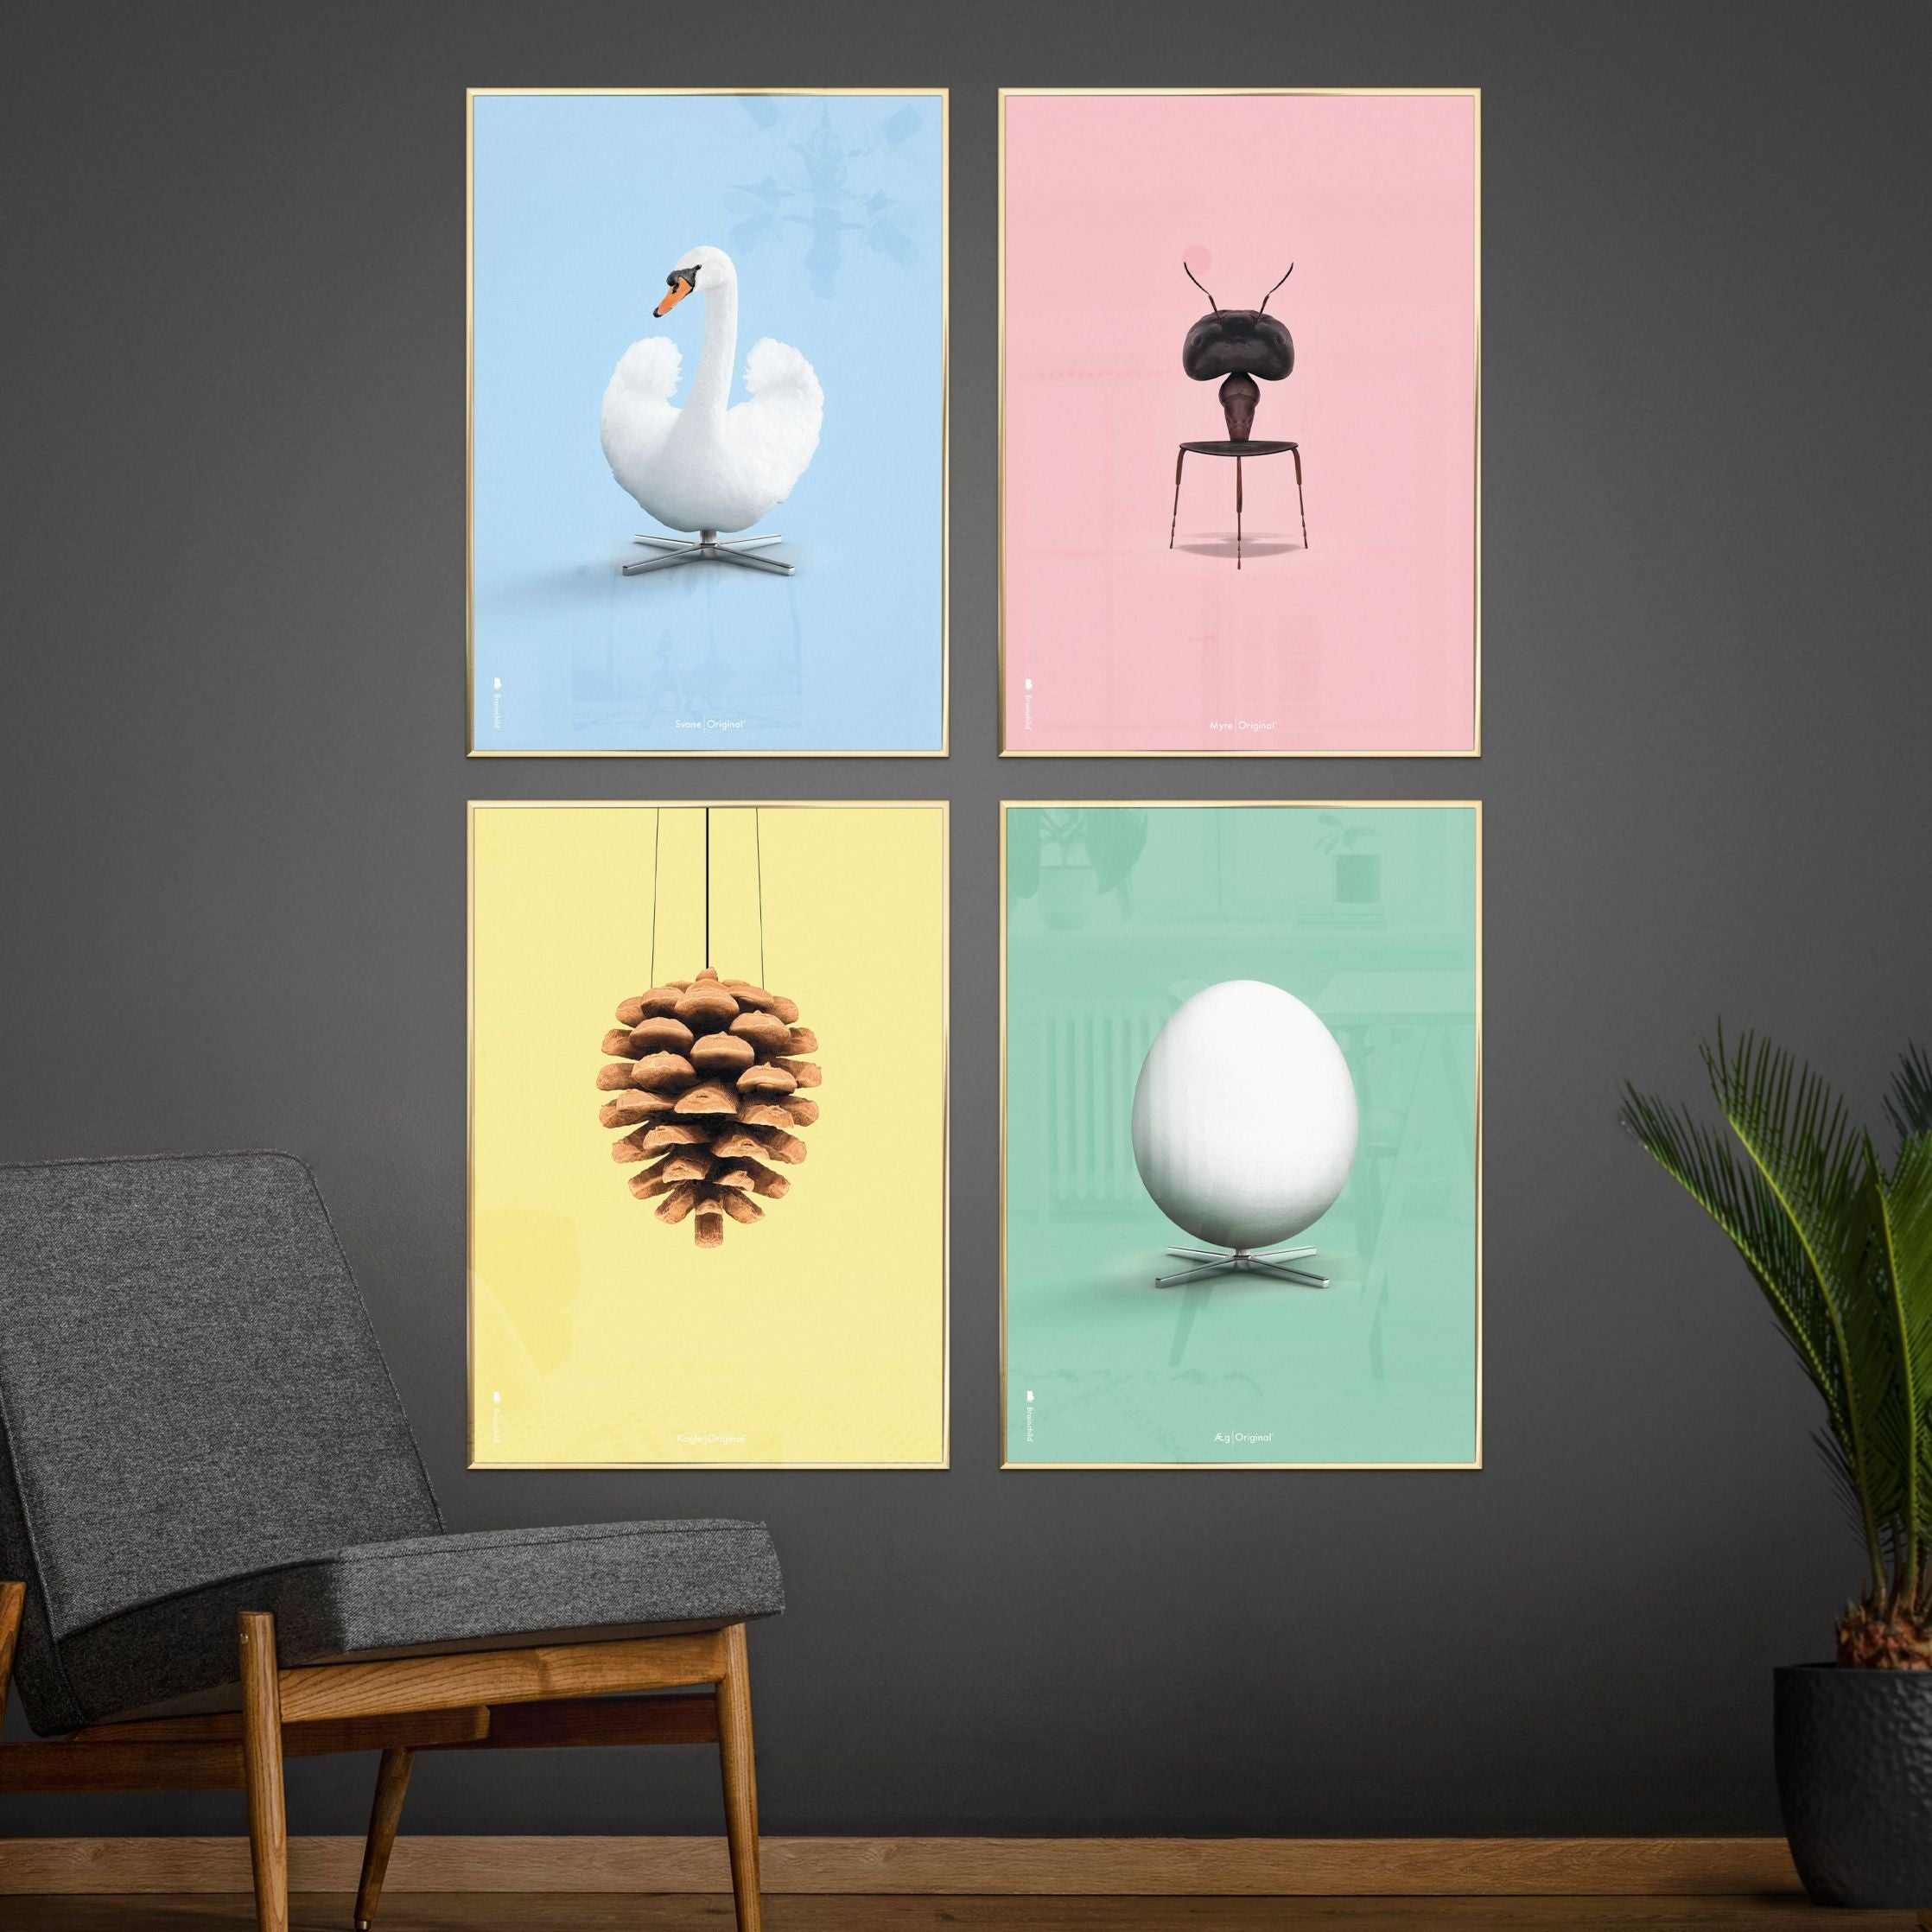 brainchild Pine Cone Classic Poster, messing gekleurd frame 70 x100 cm, gele achtergrond